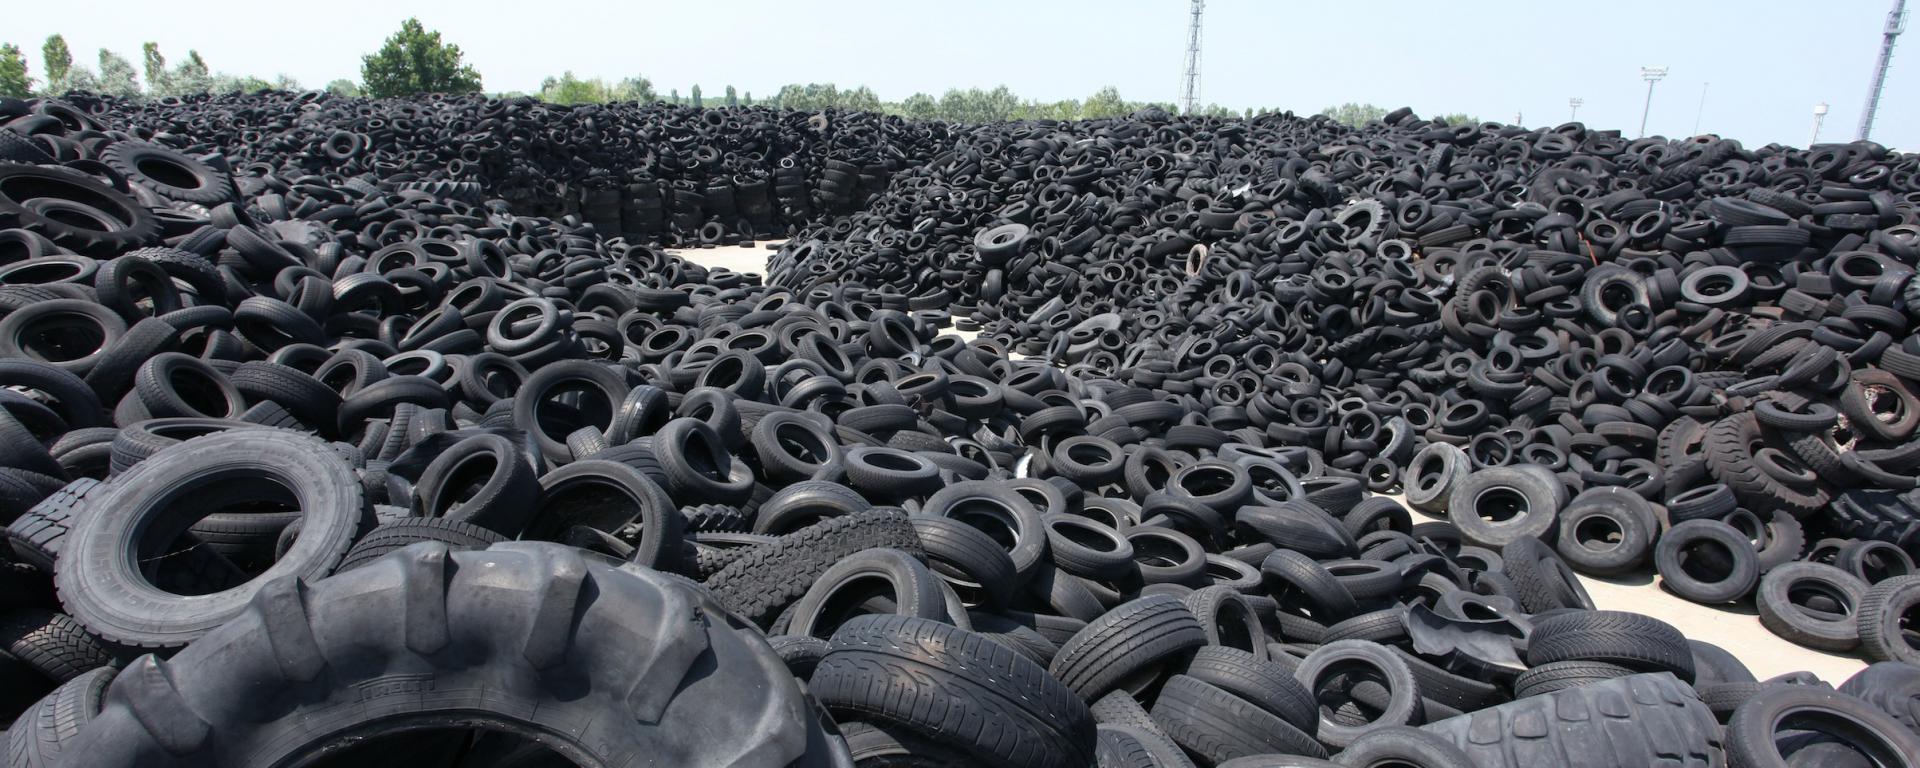 Avvio di un’attività di riciclaggio di pneumatici